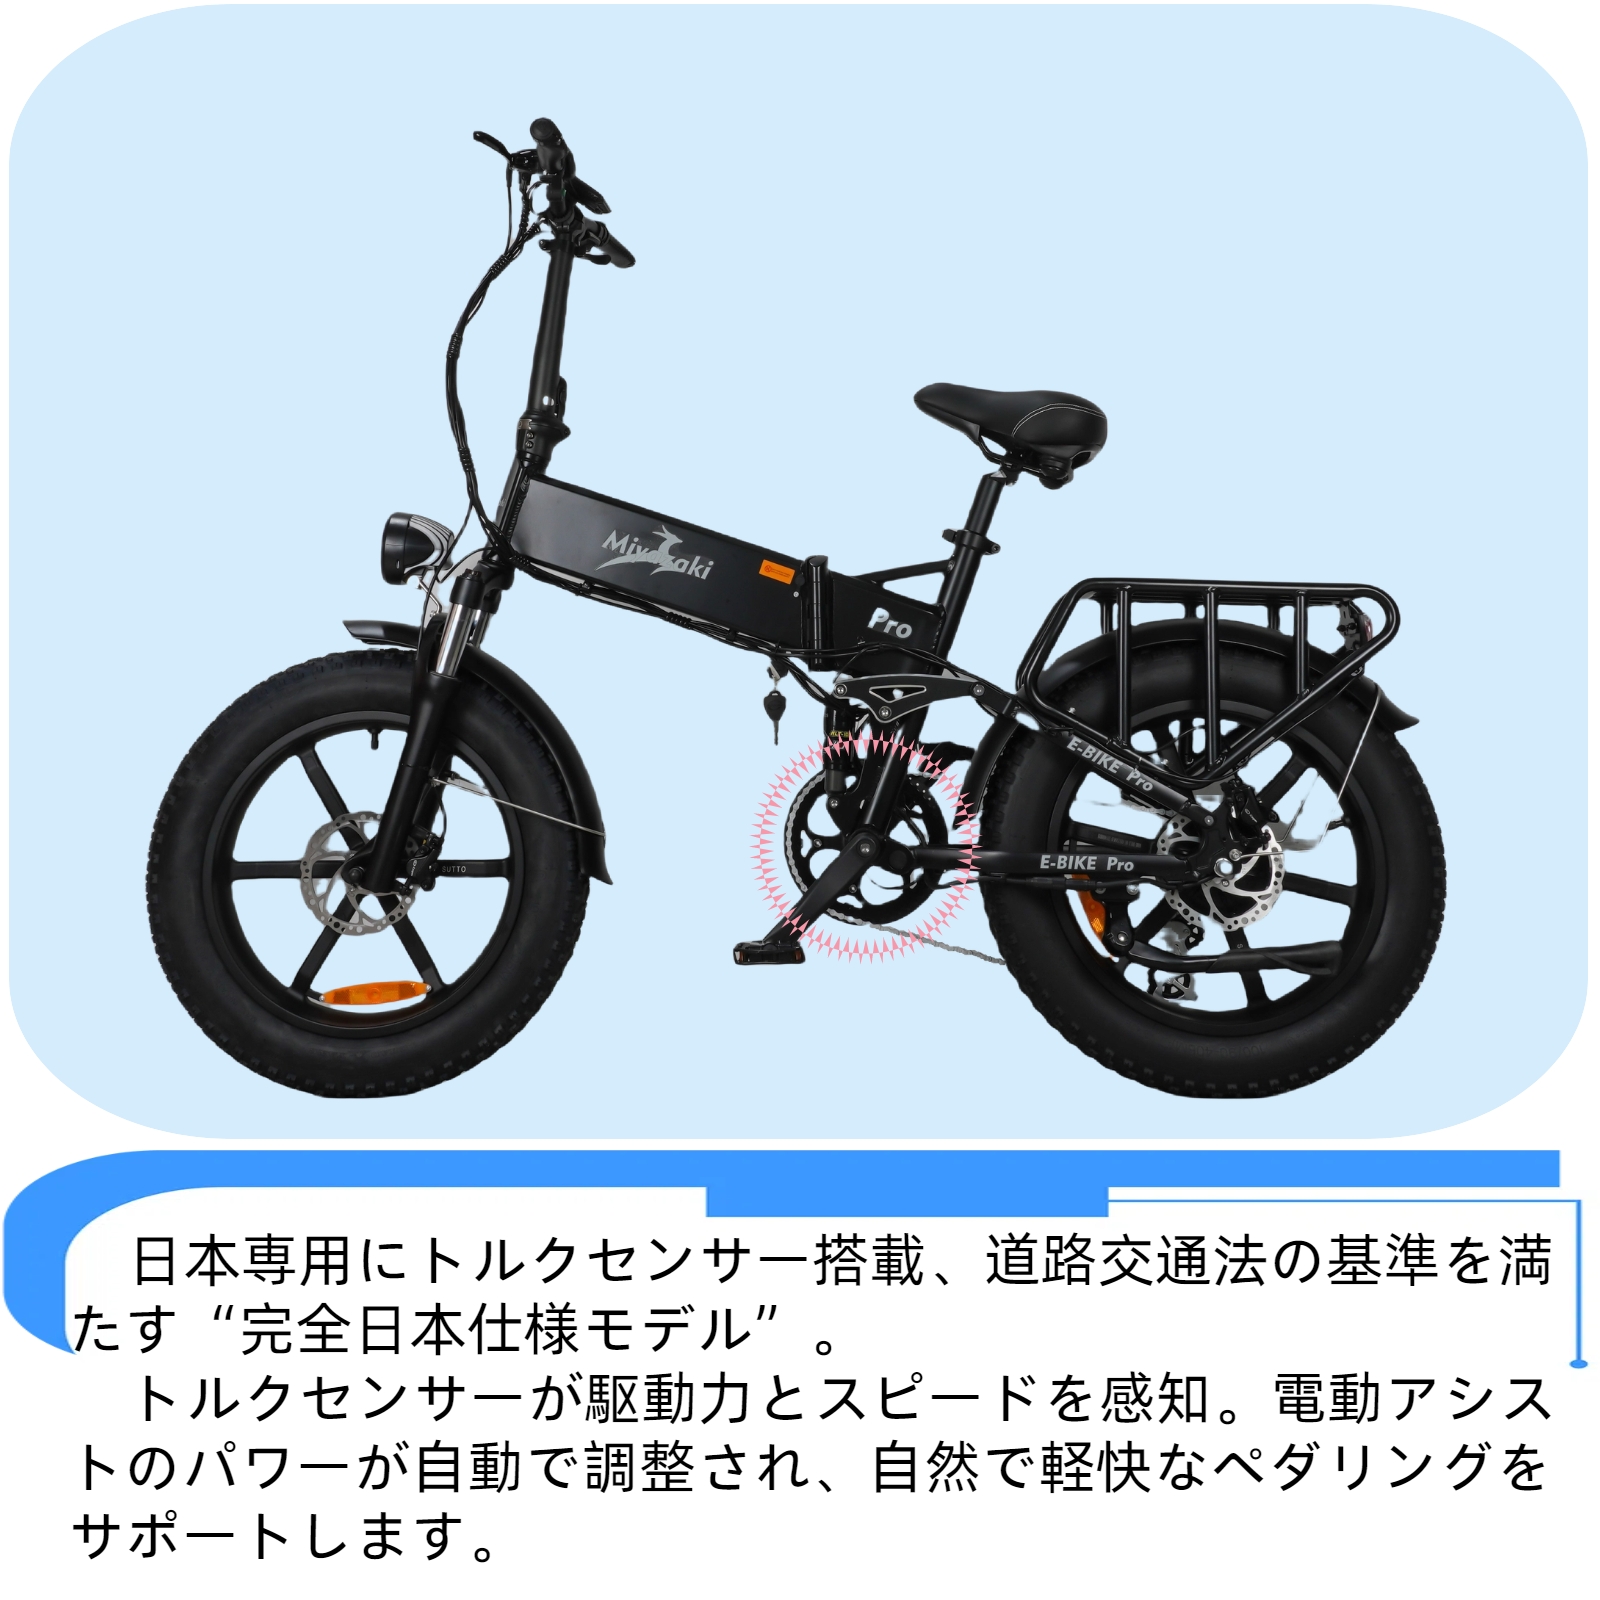 送料無料 E-bike Miyazaki Proファットバイク 電動 アシスト自転車 